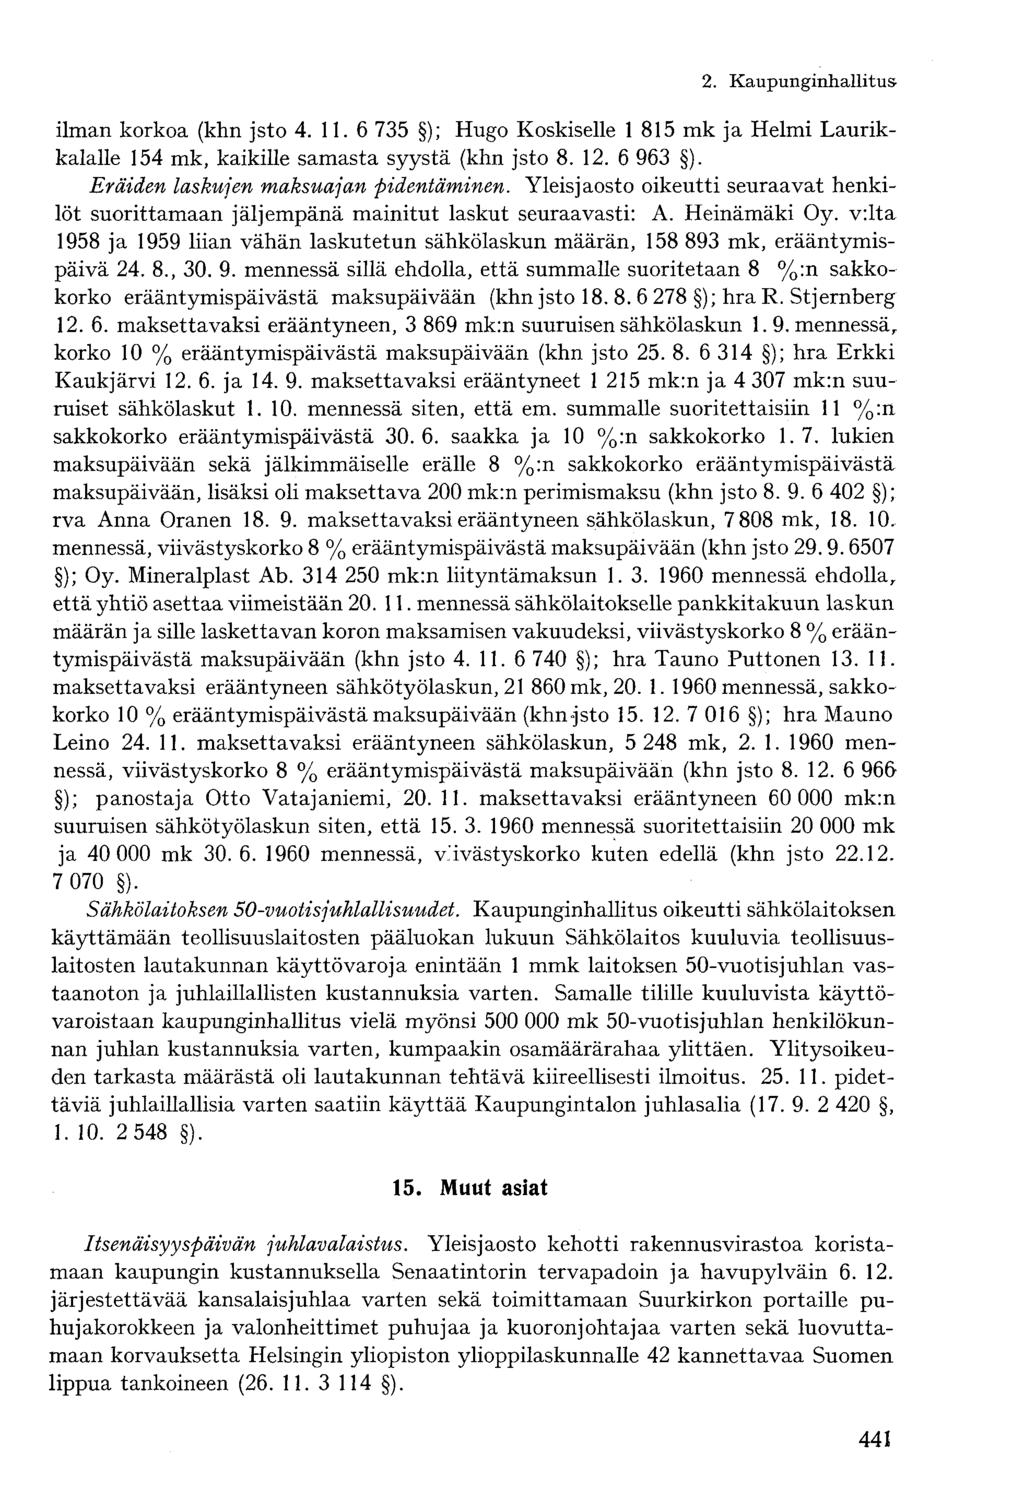 2. Kaupunginhallitusilman korkoa (khn jsto 4. 11. 6 735 ); Hugo Koskiselle 1 815 mk ja Helmi Laurikkalalle 154 mk, kaikille samasta syystä (khn jsto 8. 12. 6 963 ).